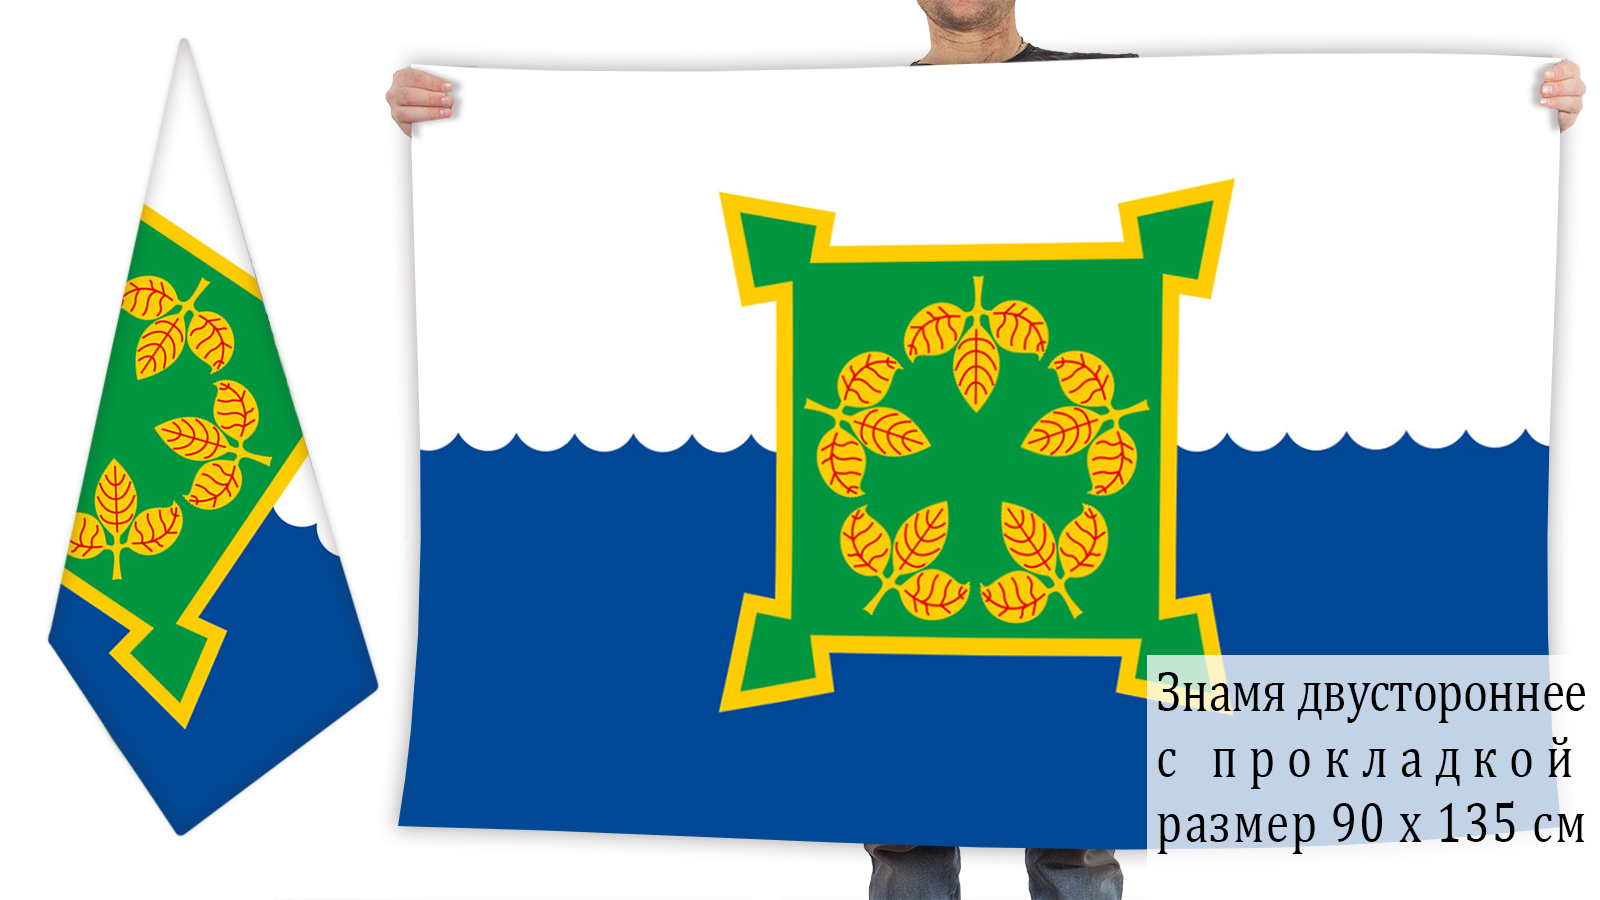 Двусторонний флаг Чебаркуля